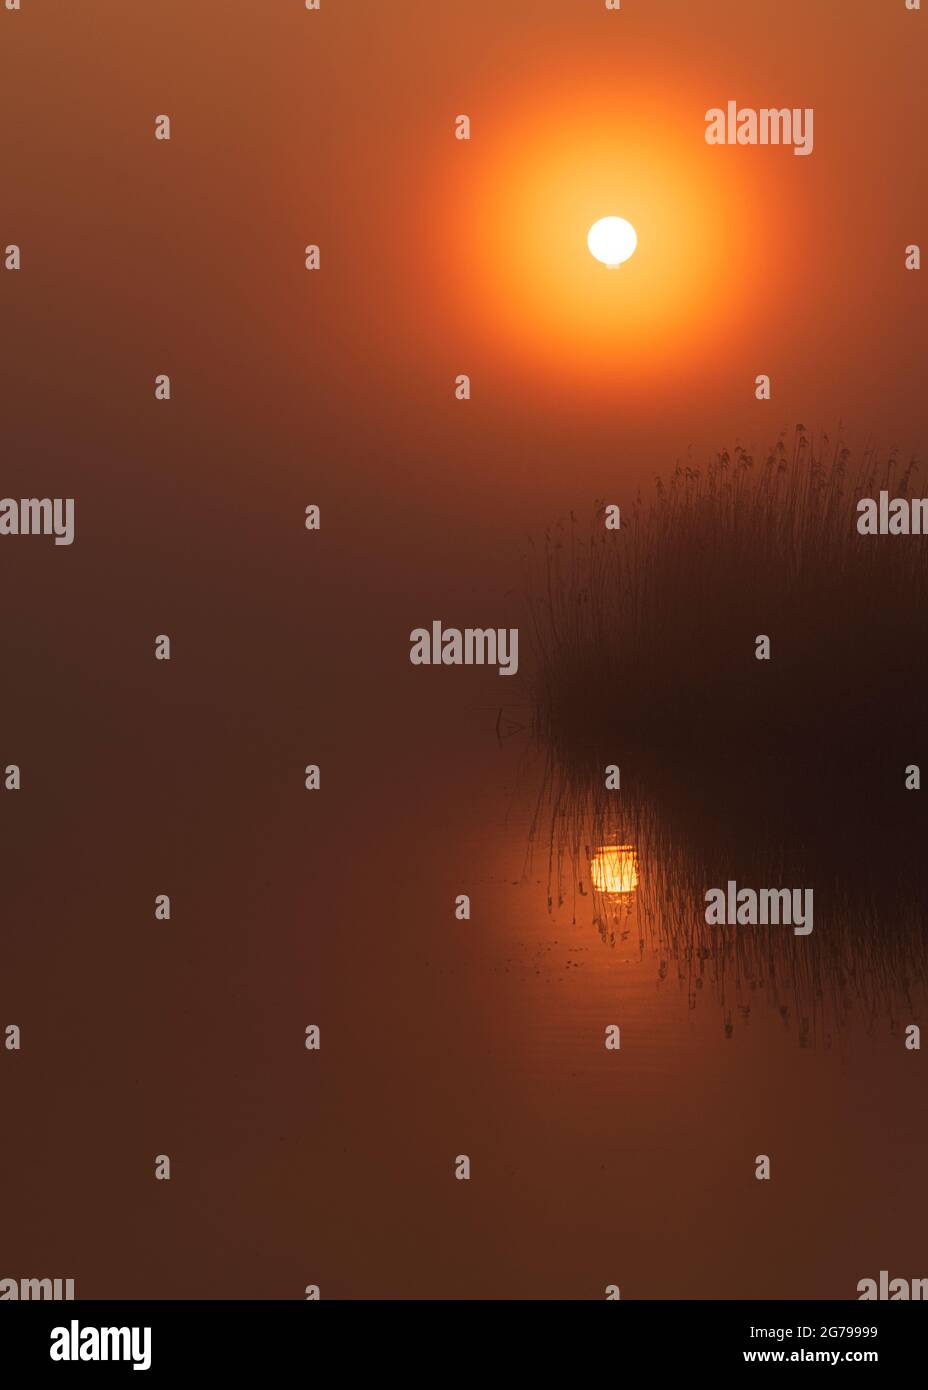 Eindrücke einer Frühjahrswanderung bei Sonnenaufgang und Nebel in Südholland in der Region Alblasserwaard Vijfheerenlanden bei Kinderdijk. Sonne, Schilf und Wasser: Stimmungsbild mit Reflexion Stockfoto